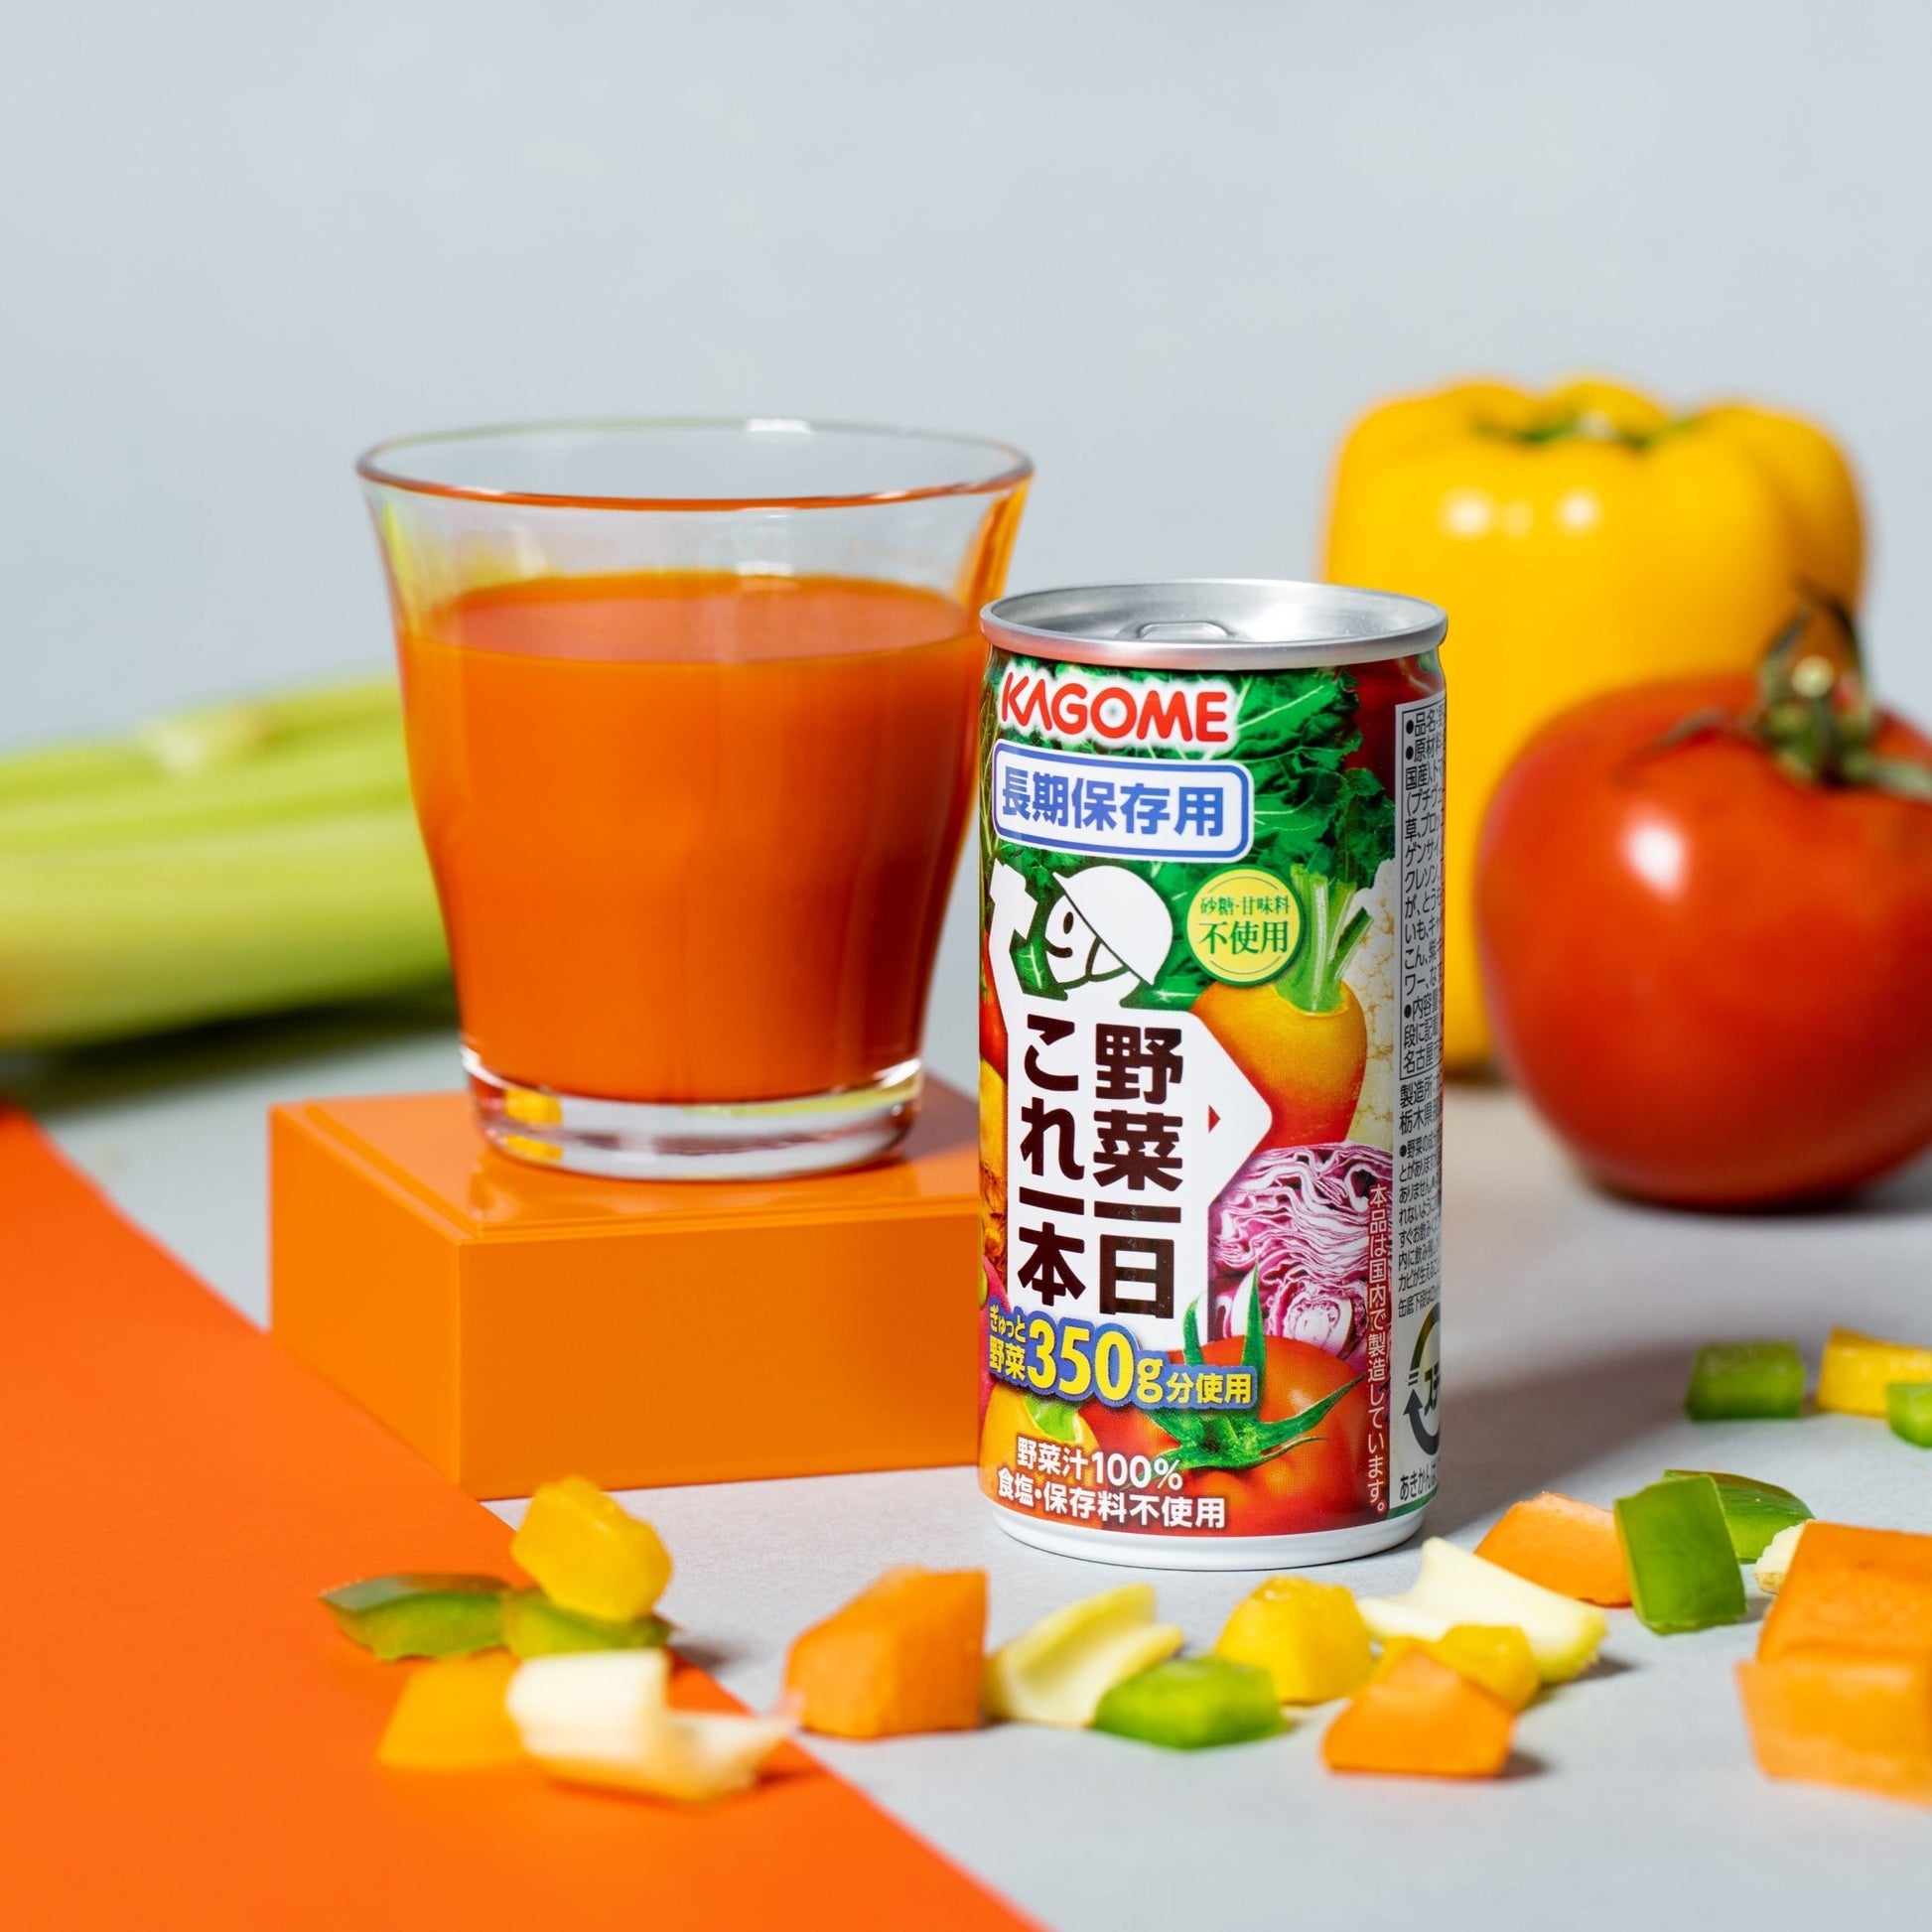 【日本非常食】Kagome長期保存用野菜汁 - 釘蓋 Best Before